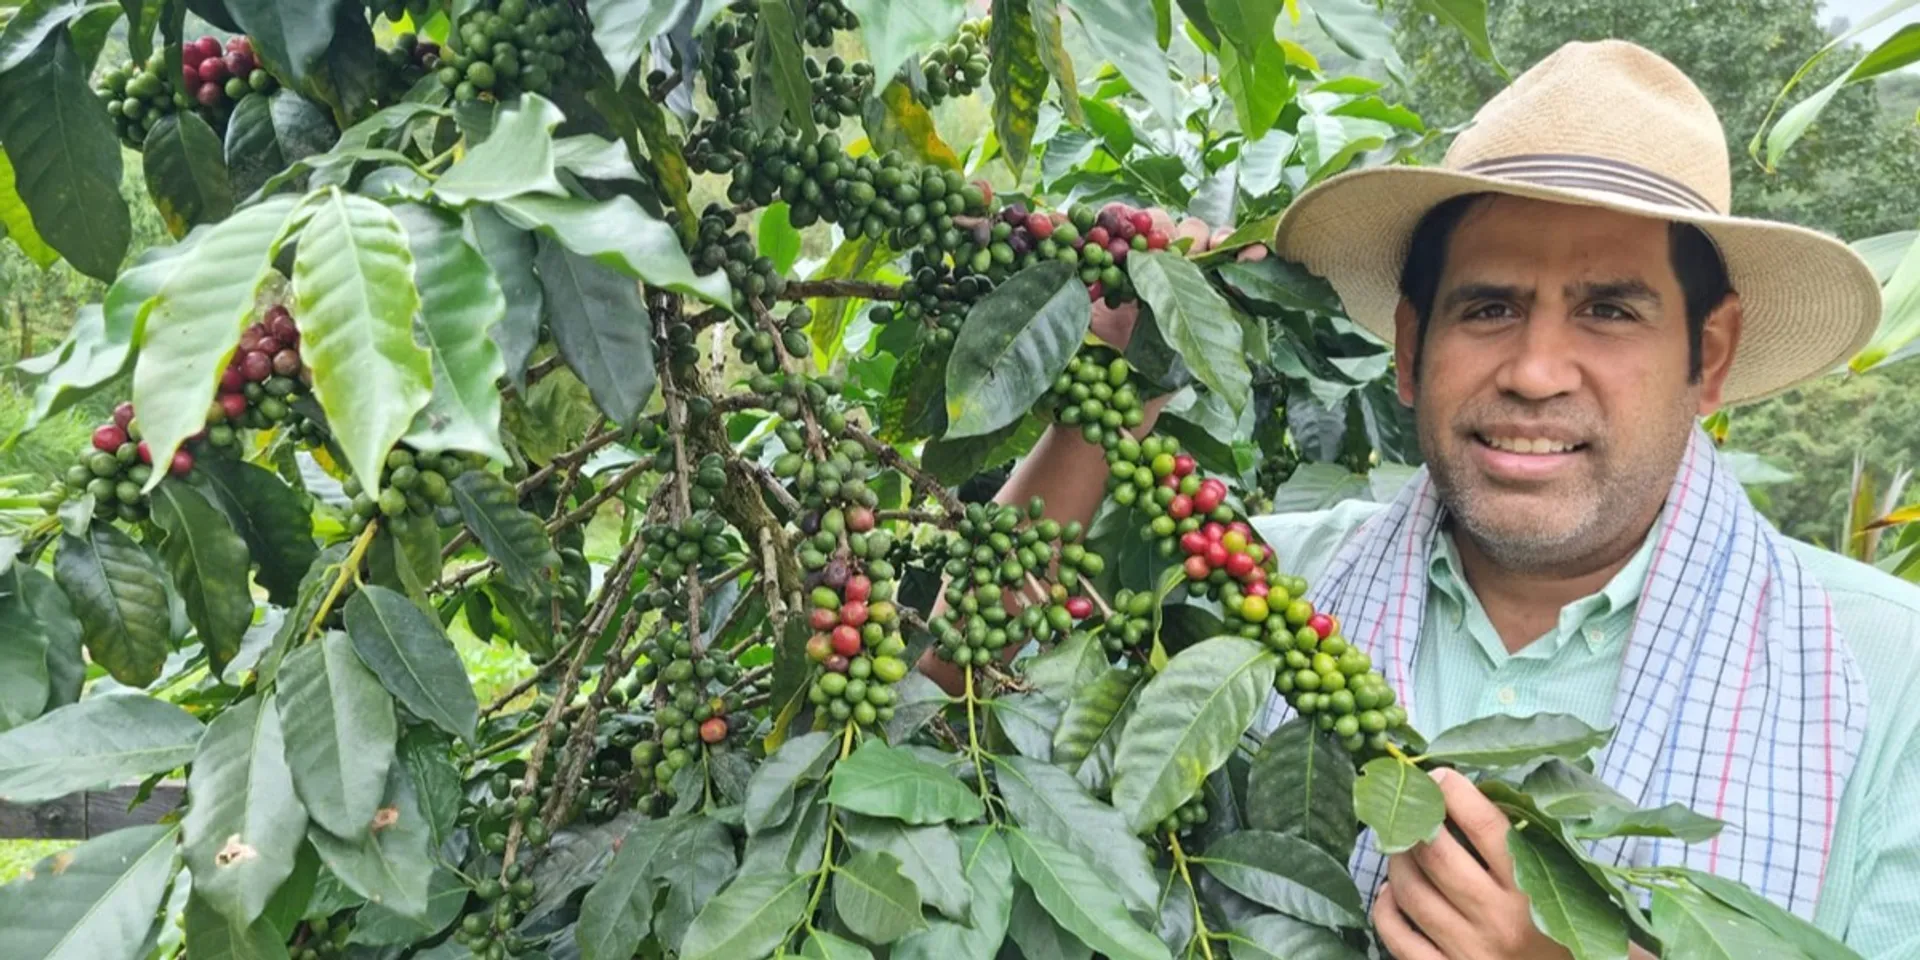 Café grain a moudre plantation